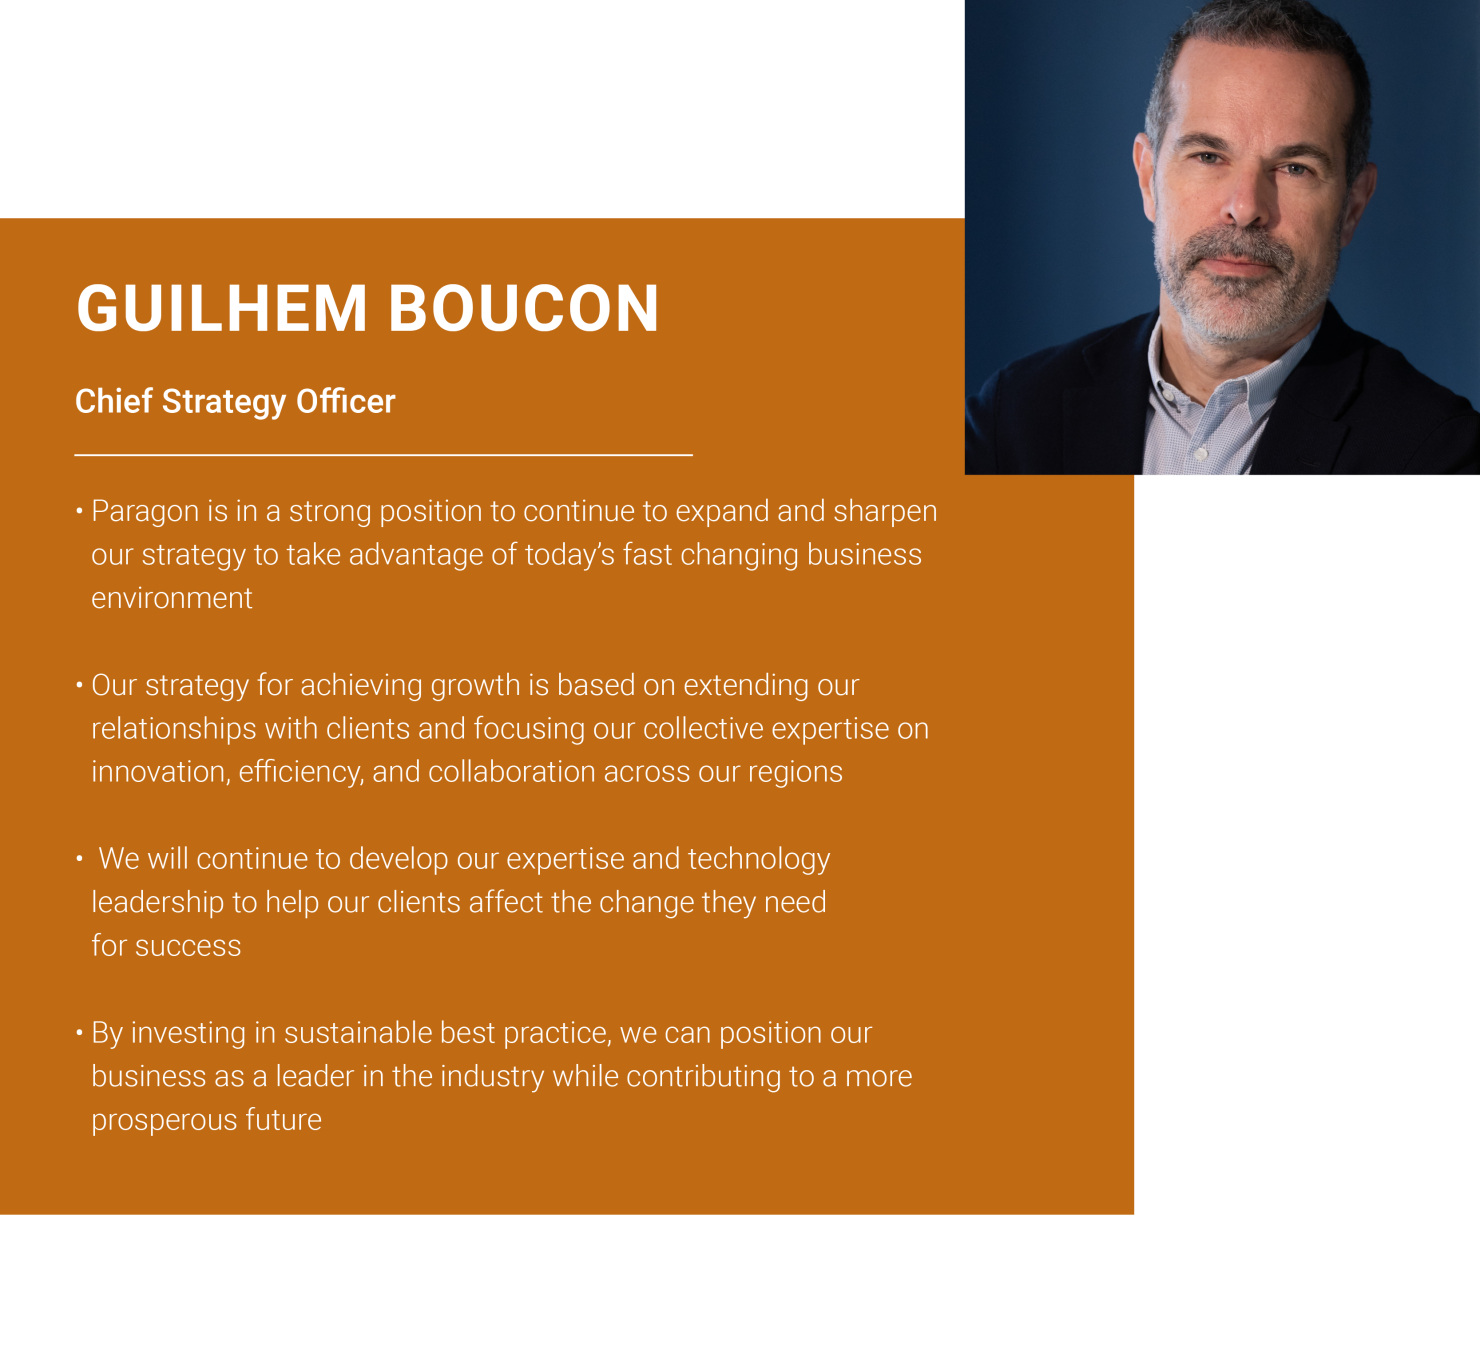 guilhem-boucon-